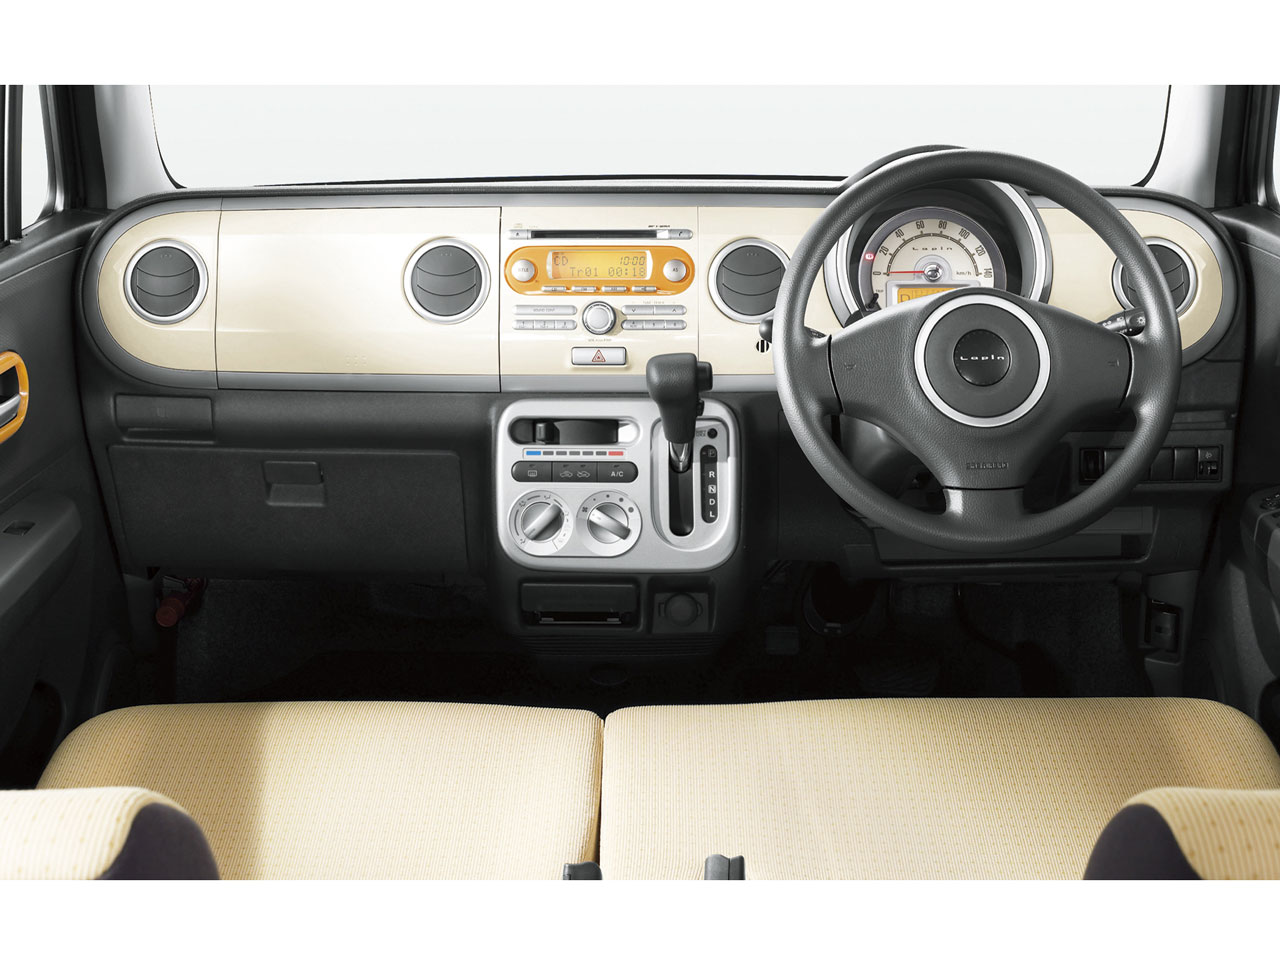 スズキ ラパン 08年モデル リミテッド 価格 性能 装備 オプション 10年11月25日発売 価格 Com